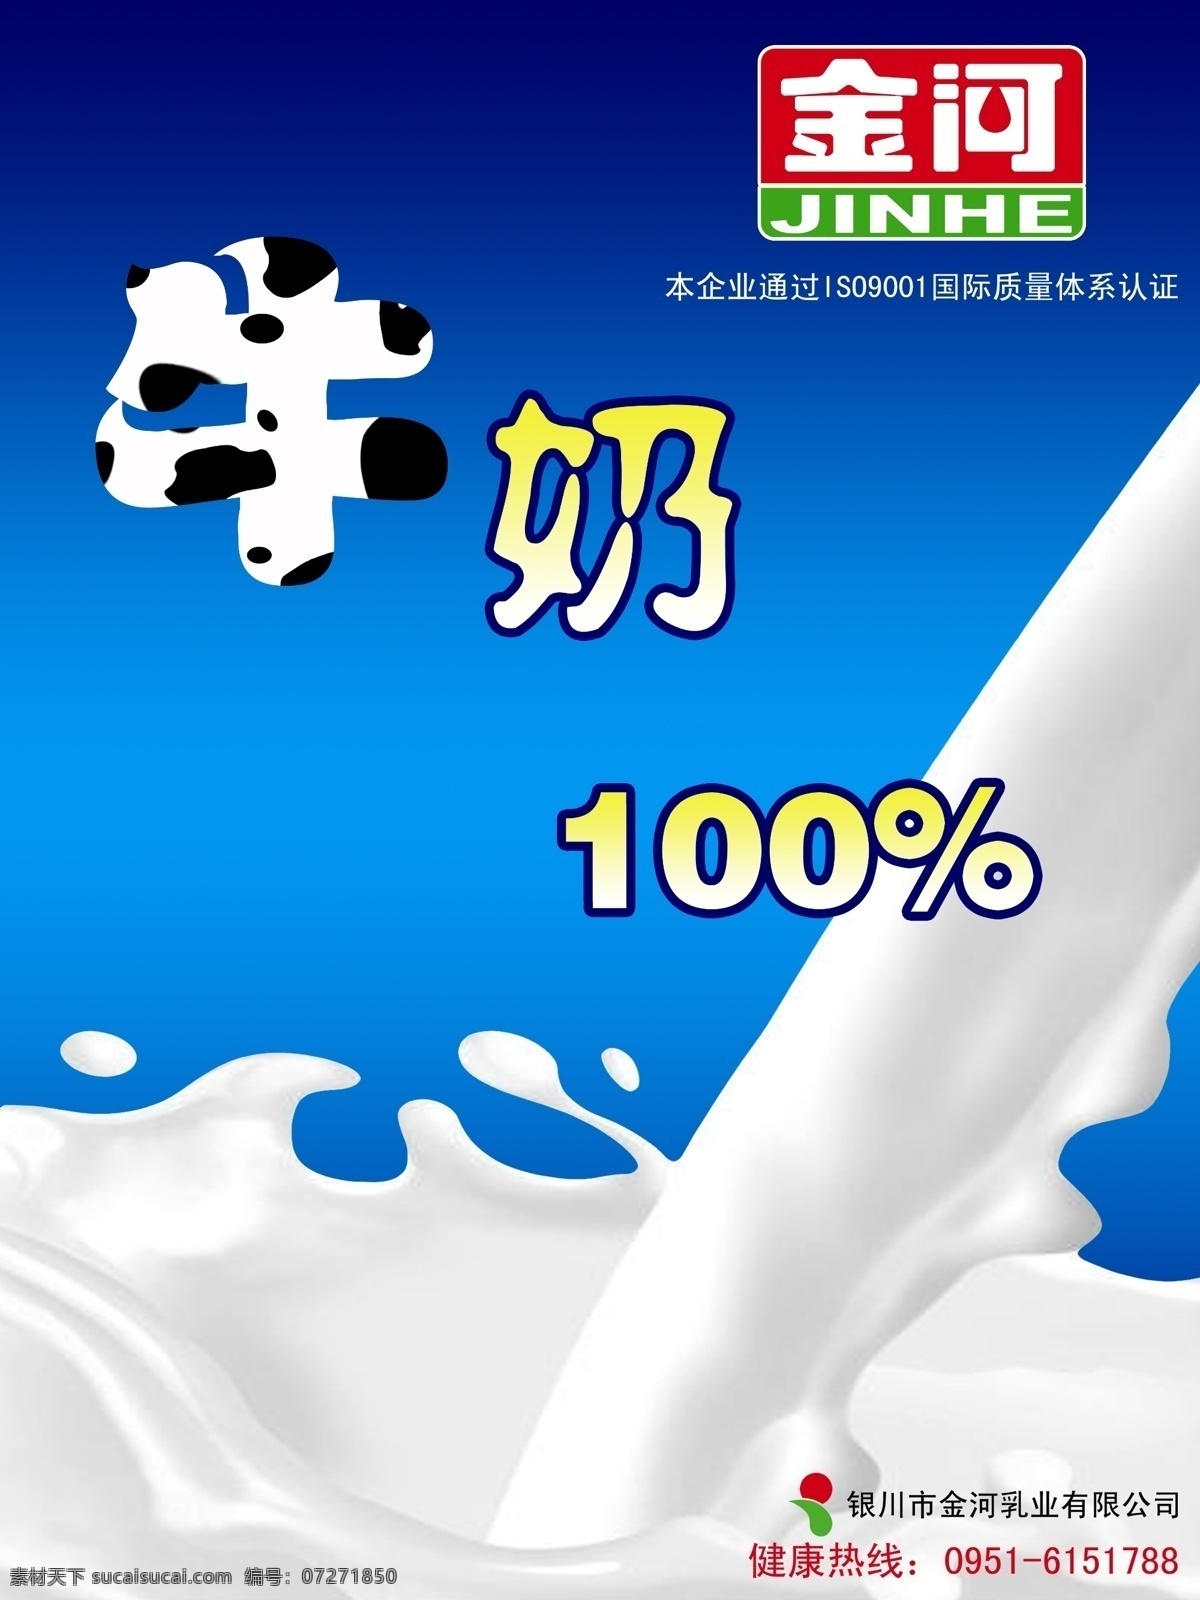 牛奶 金河 奶 纯牛奶 溅 蓝色 海报 招贴 简洁 广告 原创 奶花 流动 广告设计模板 源文件